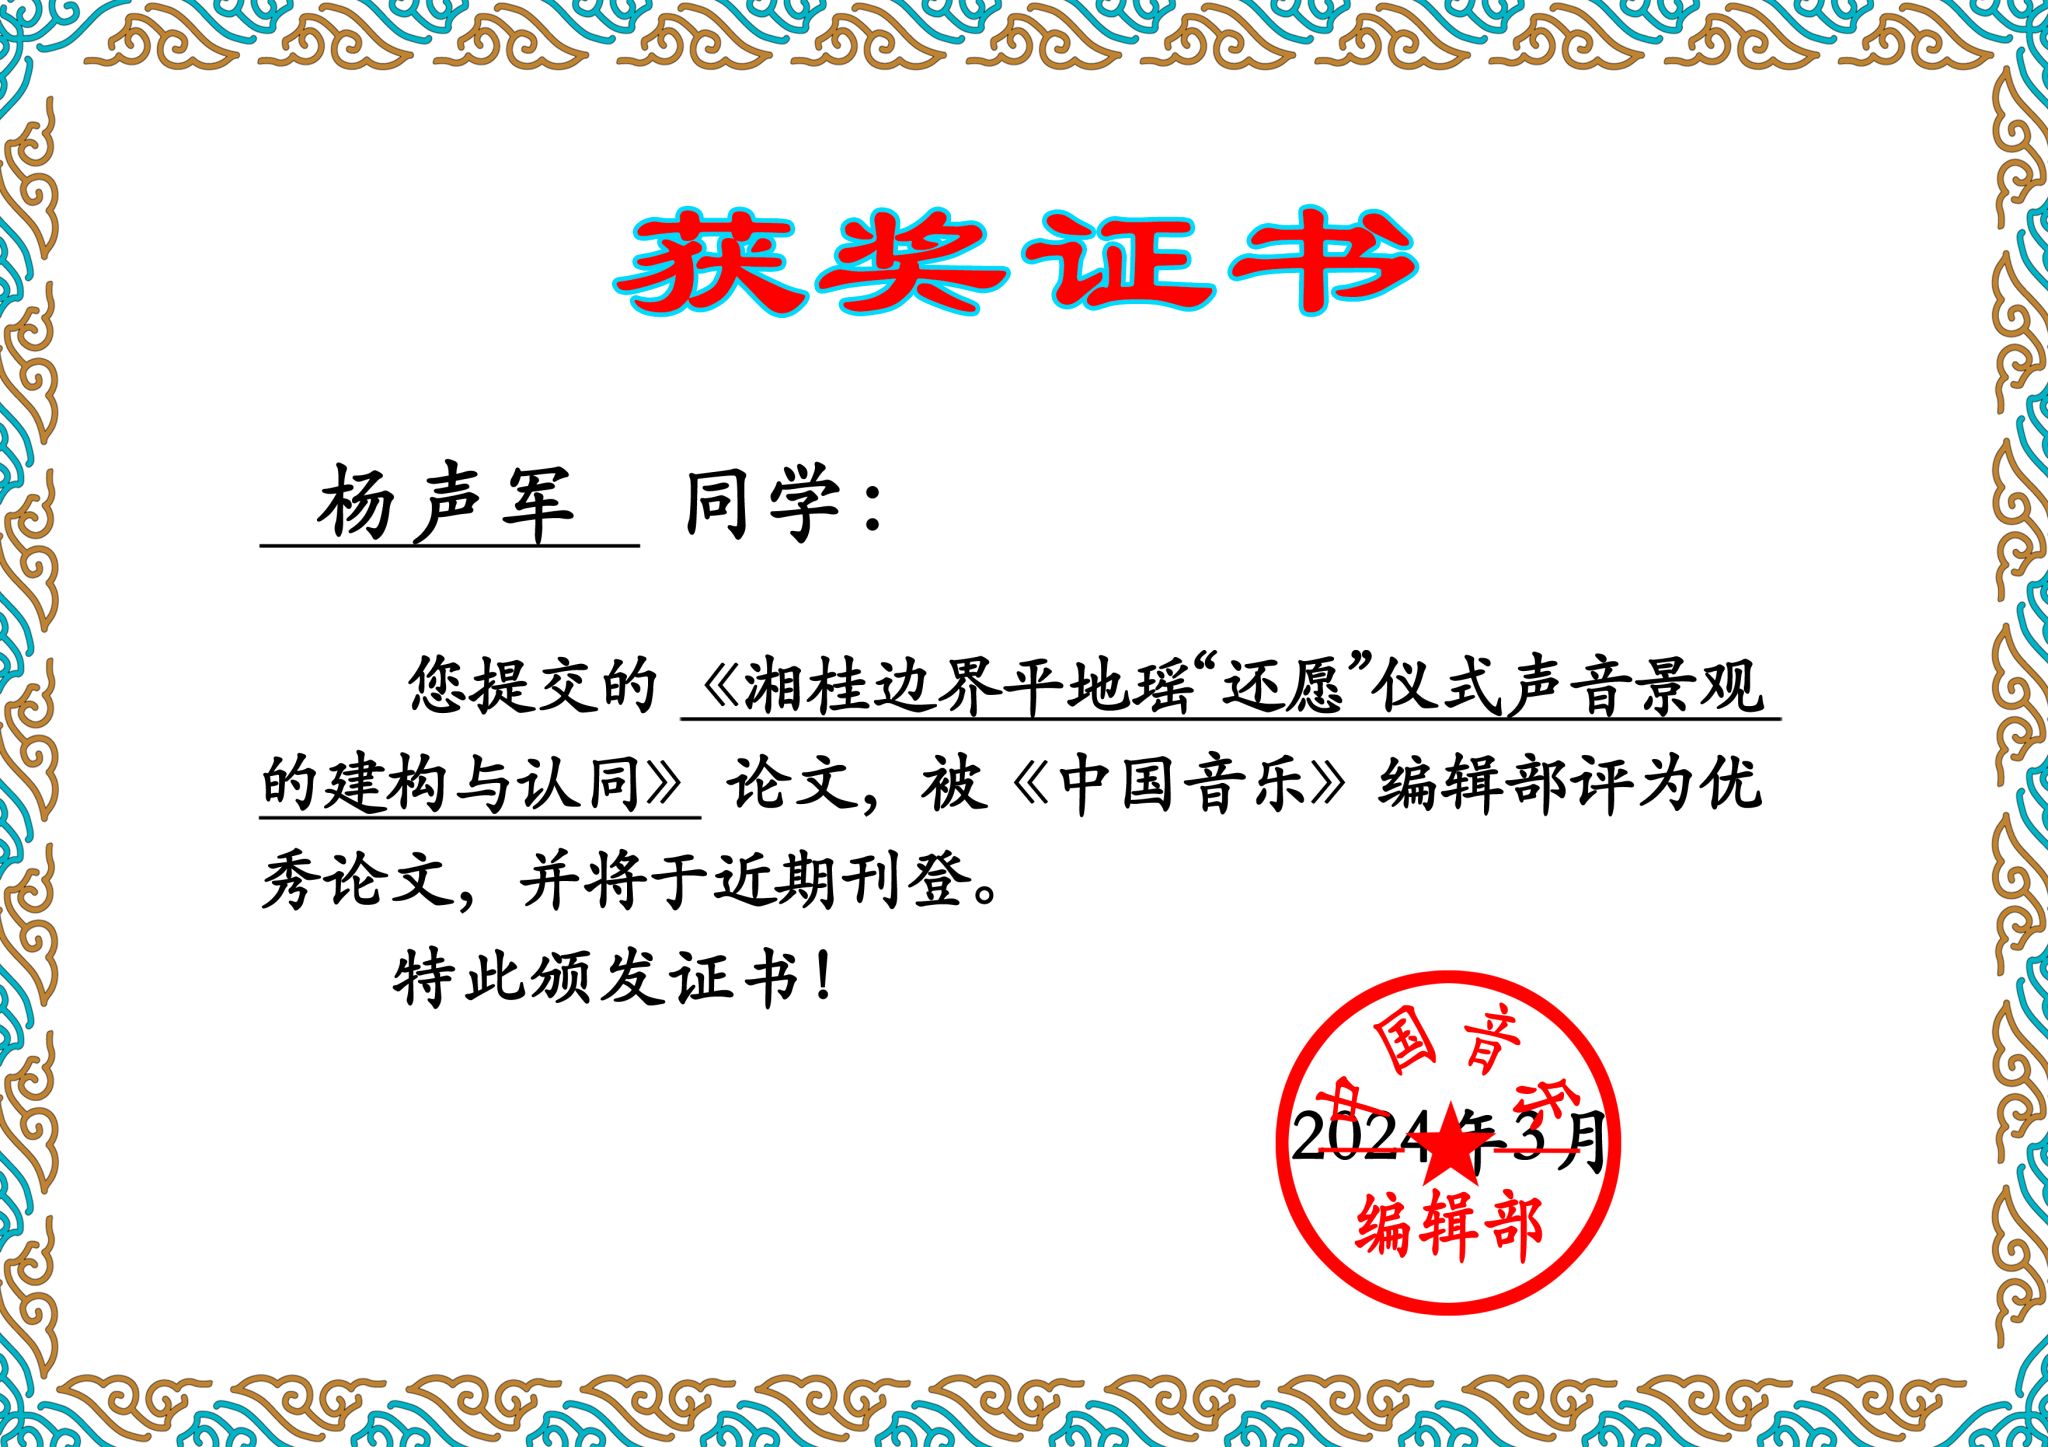 音乐舞蹈学院杨声军博士获《中国音乐》第五届音乐学硕博研究生优秀学位论文奖